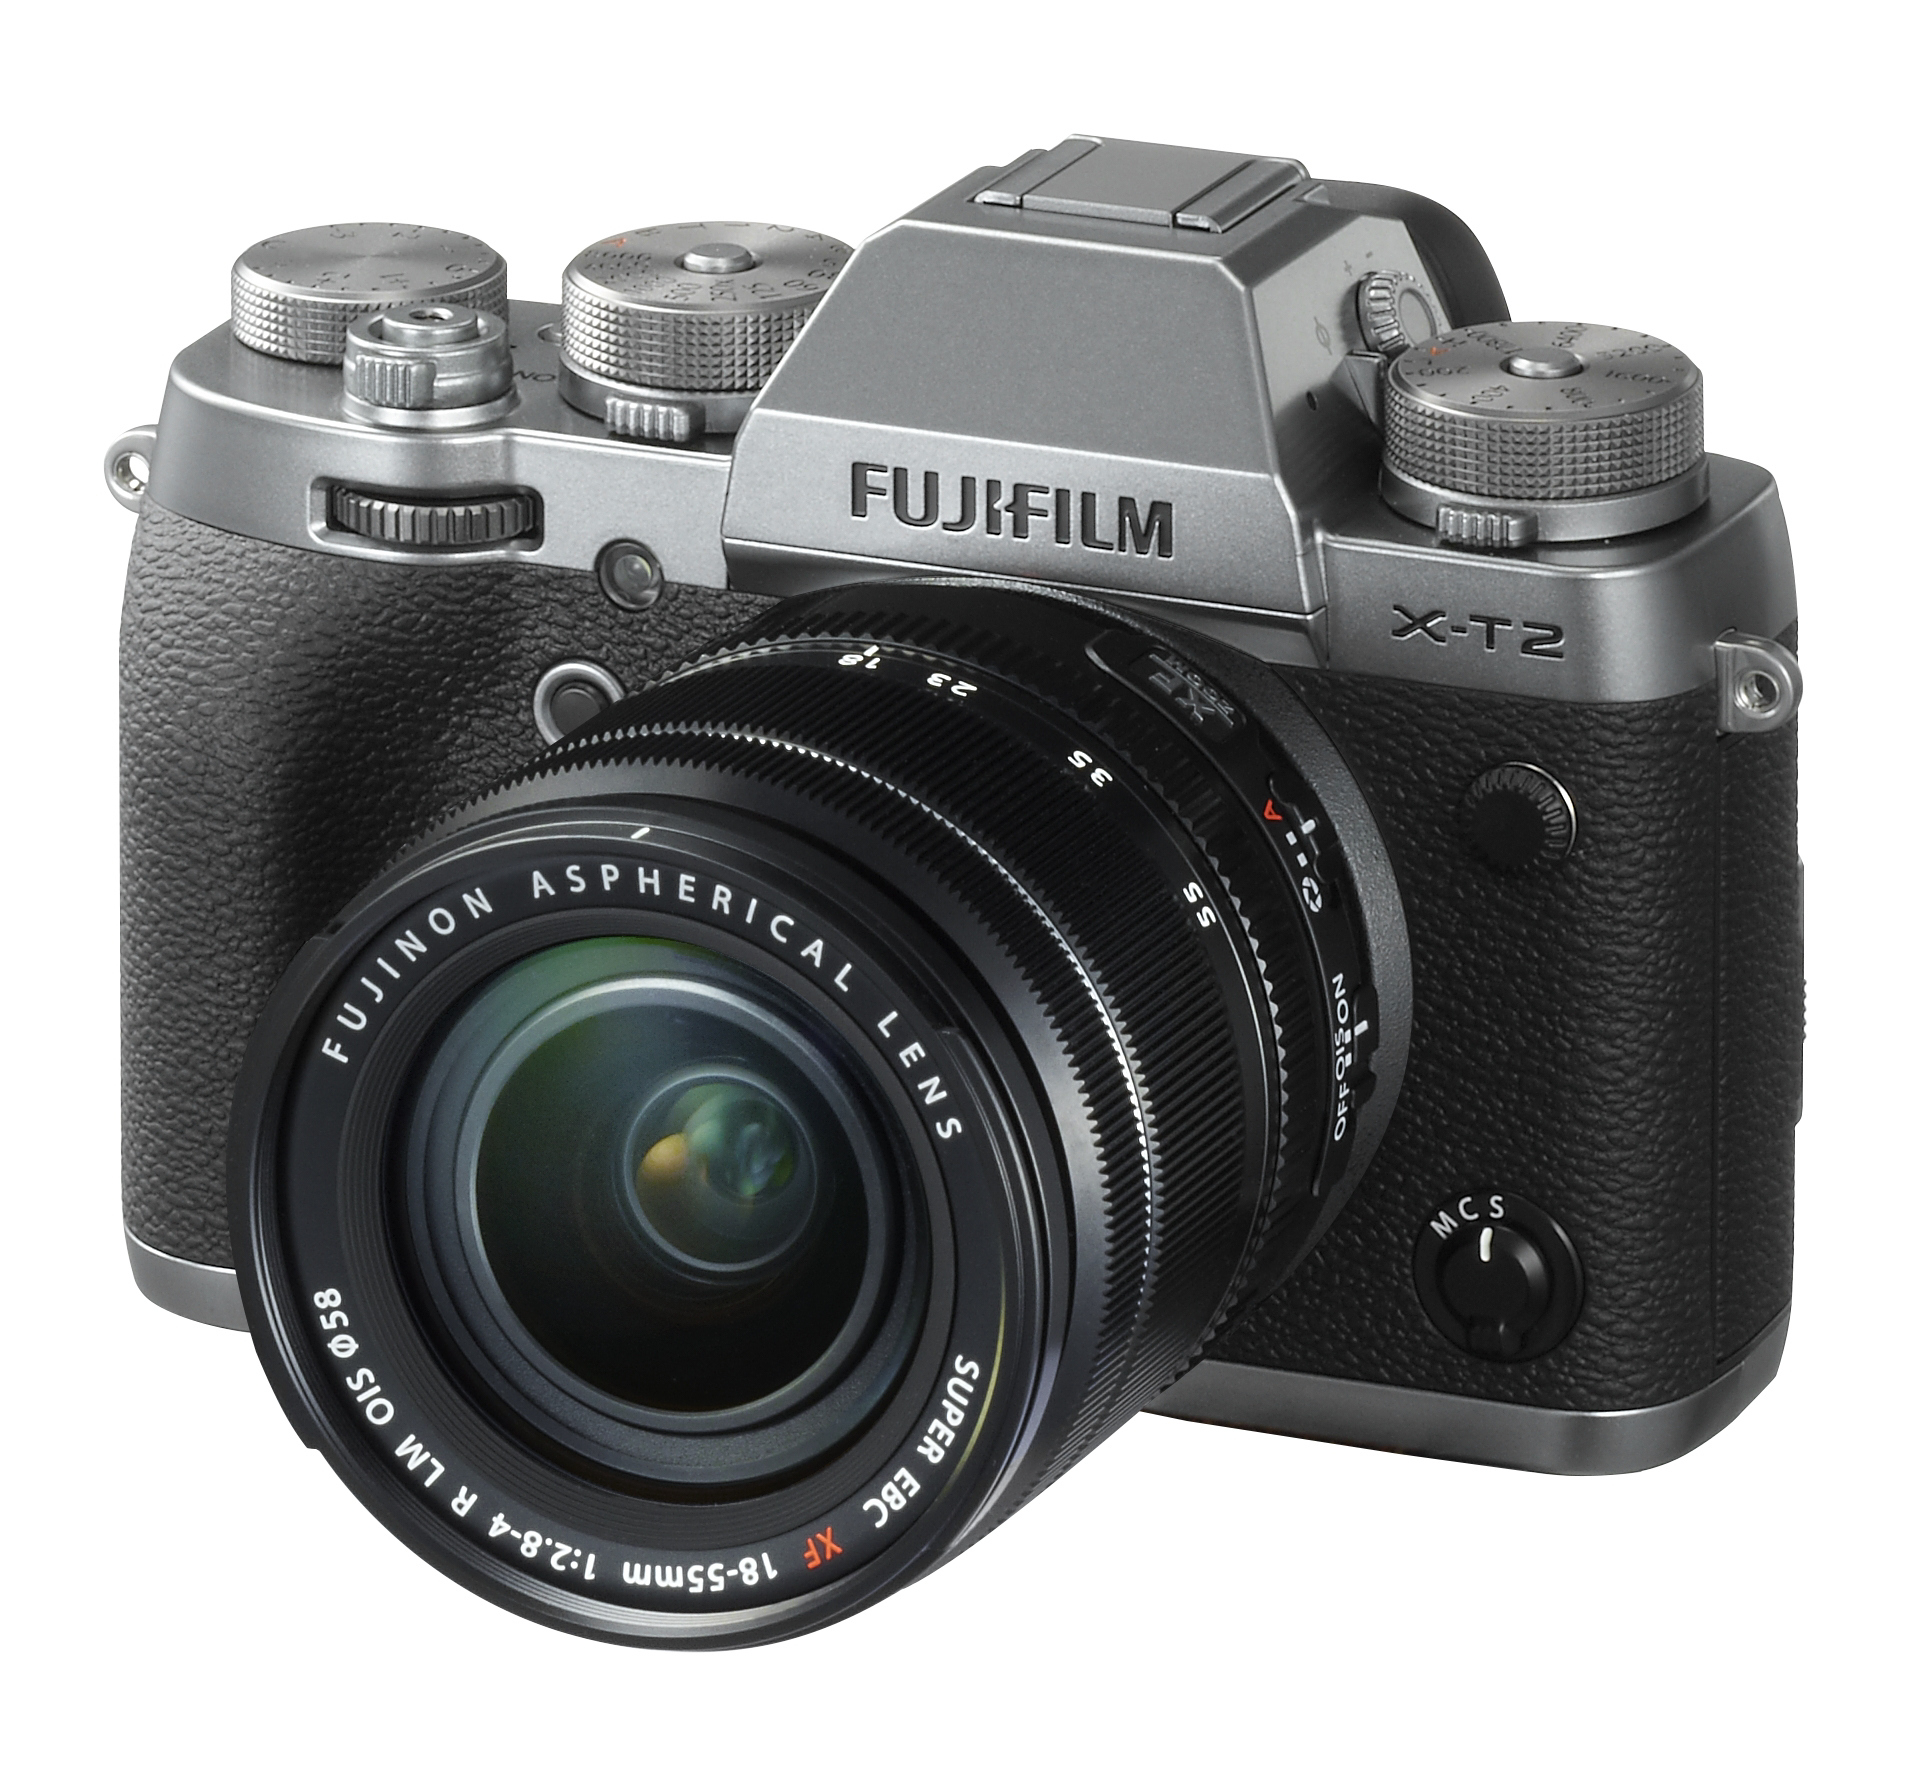 Fujifilm Launches Graphite X-Pro2, X-T2, and 23mm F2